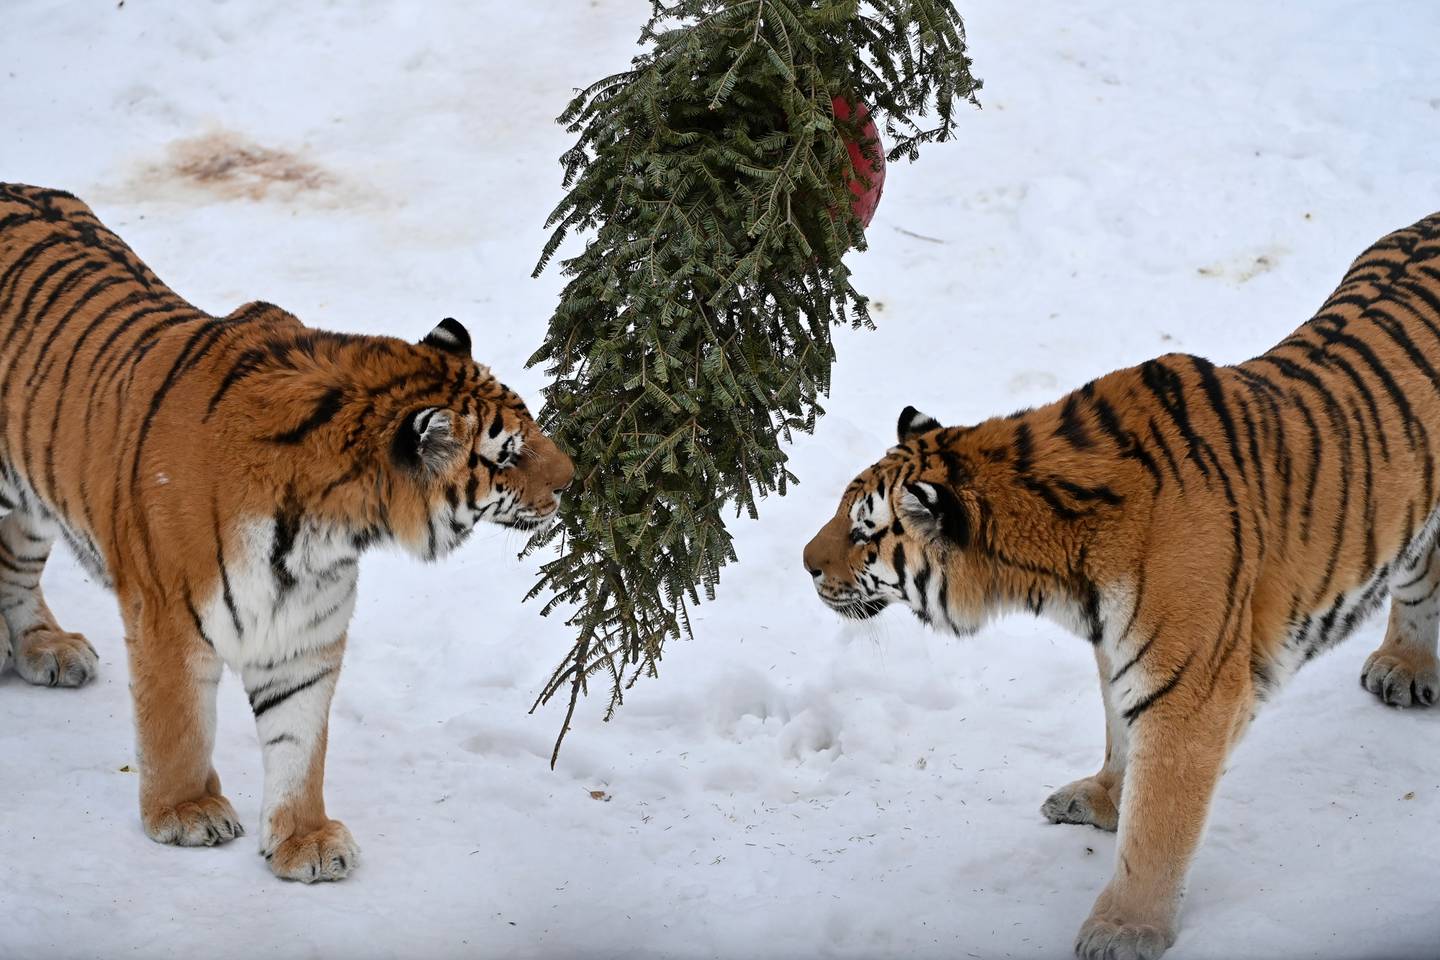 Alaska Zoo, animals, Christmas trees